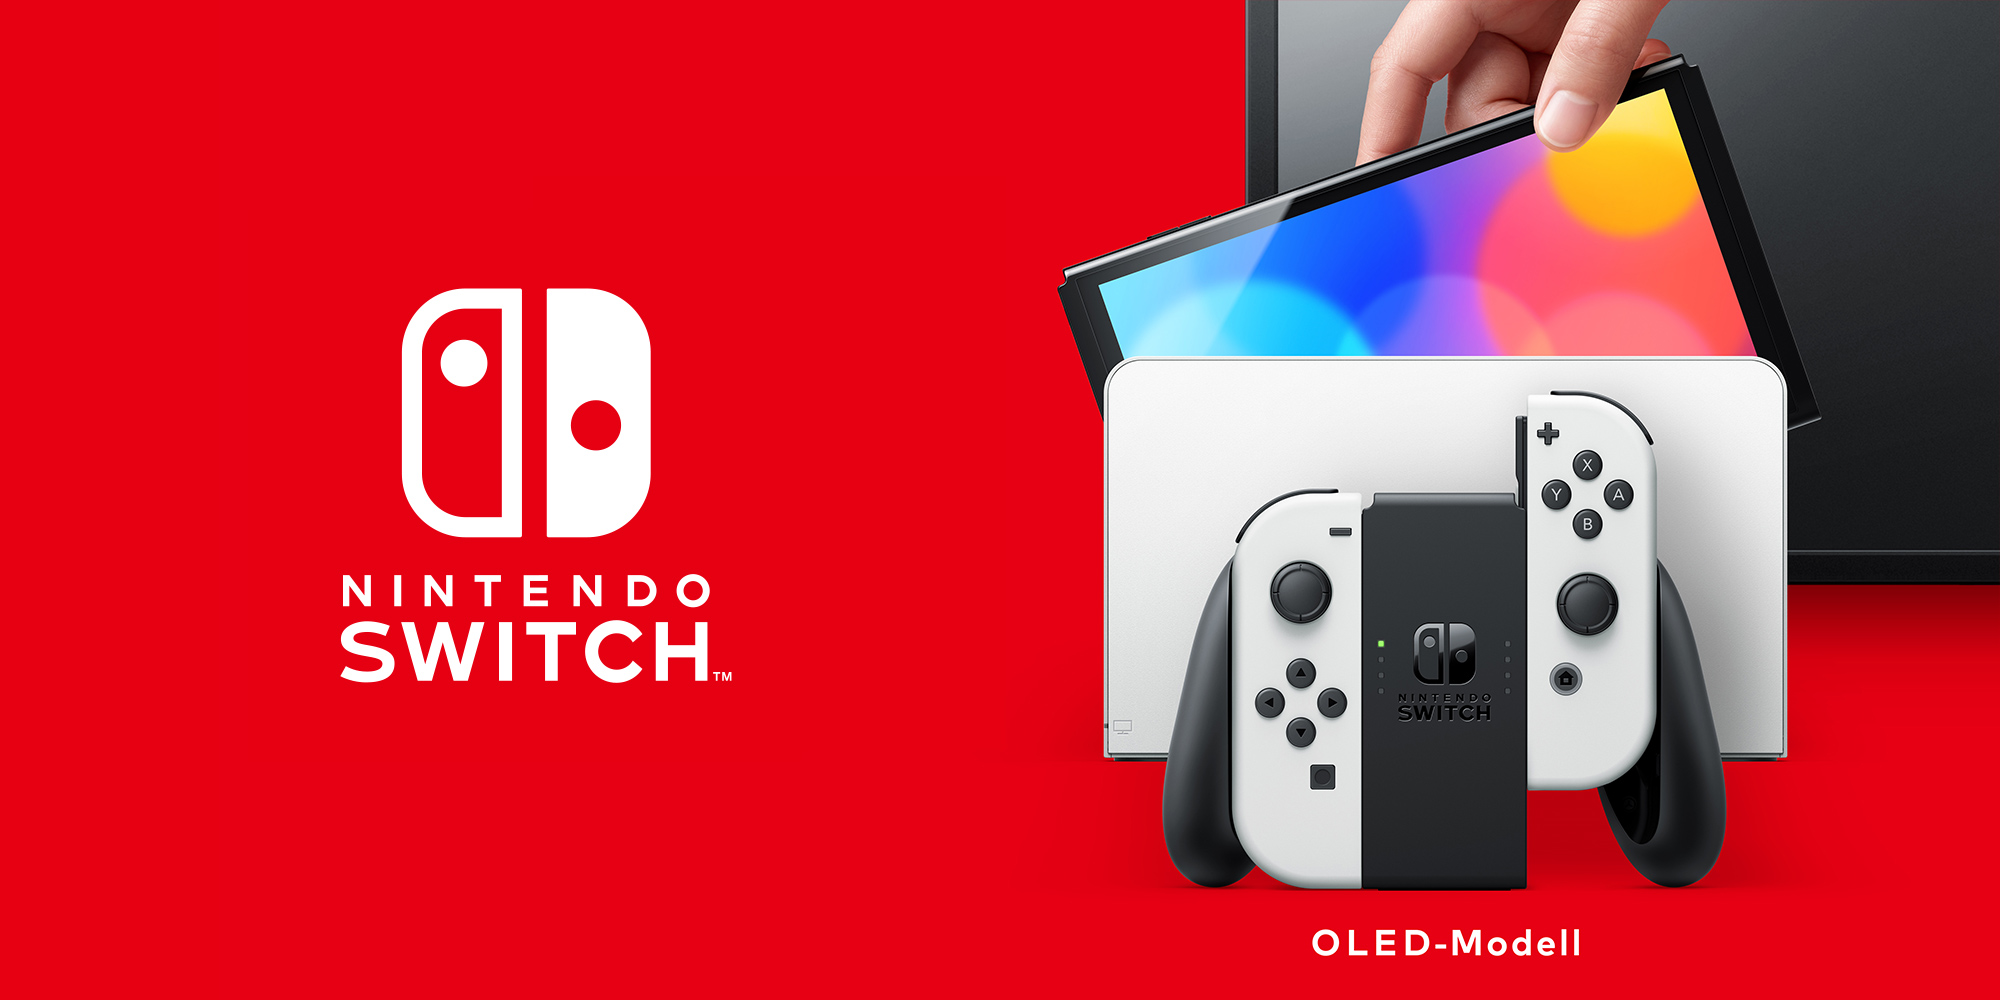 Nintendo Switch – OLED-Modell | Hardware | Nintendo